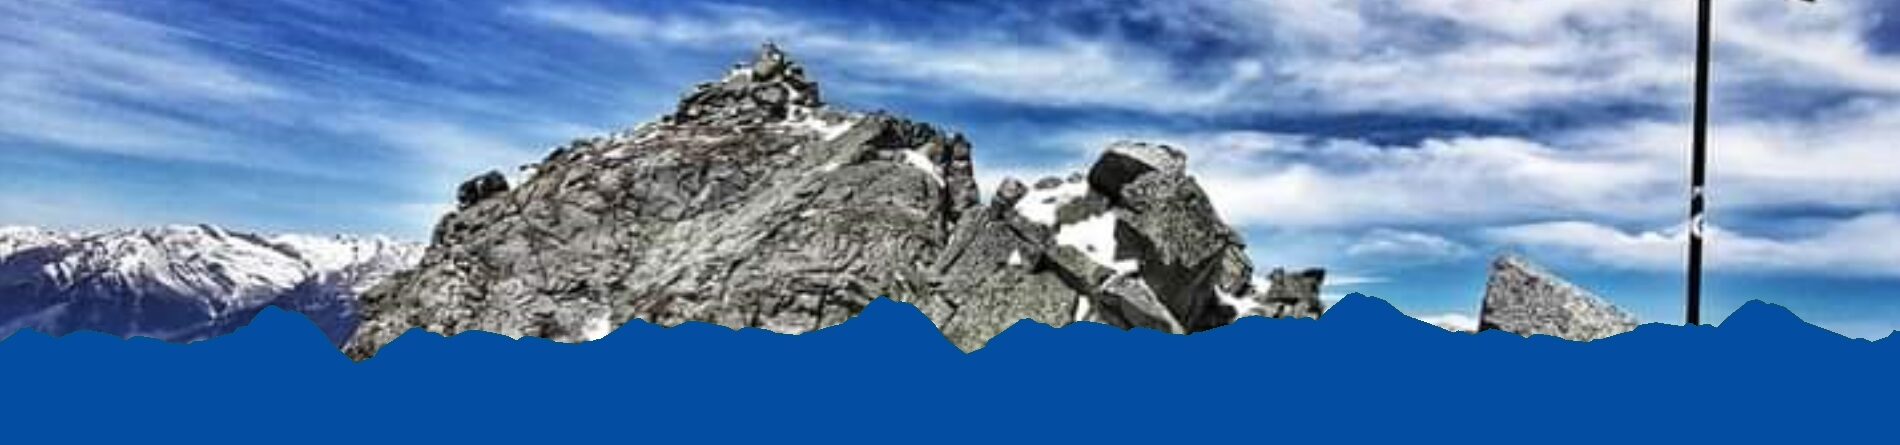 15.05.2023 – Bergrettung Meran warnt vor gefährlichen Verhältnissen am Berg